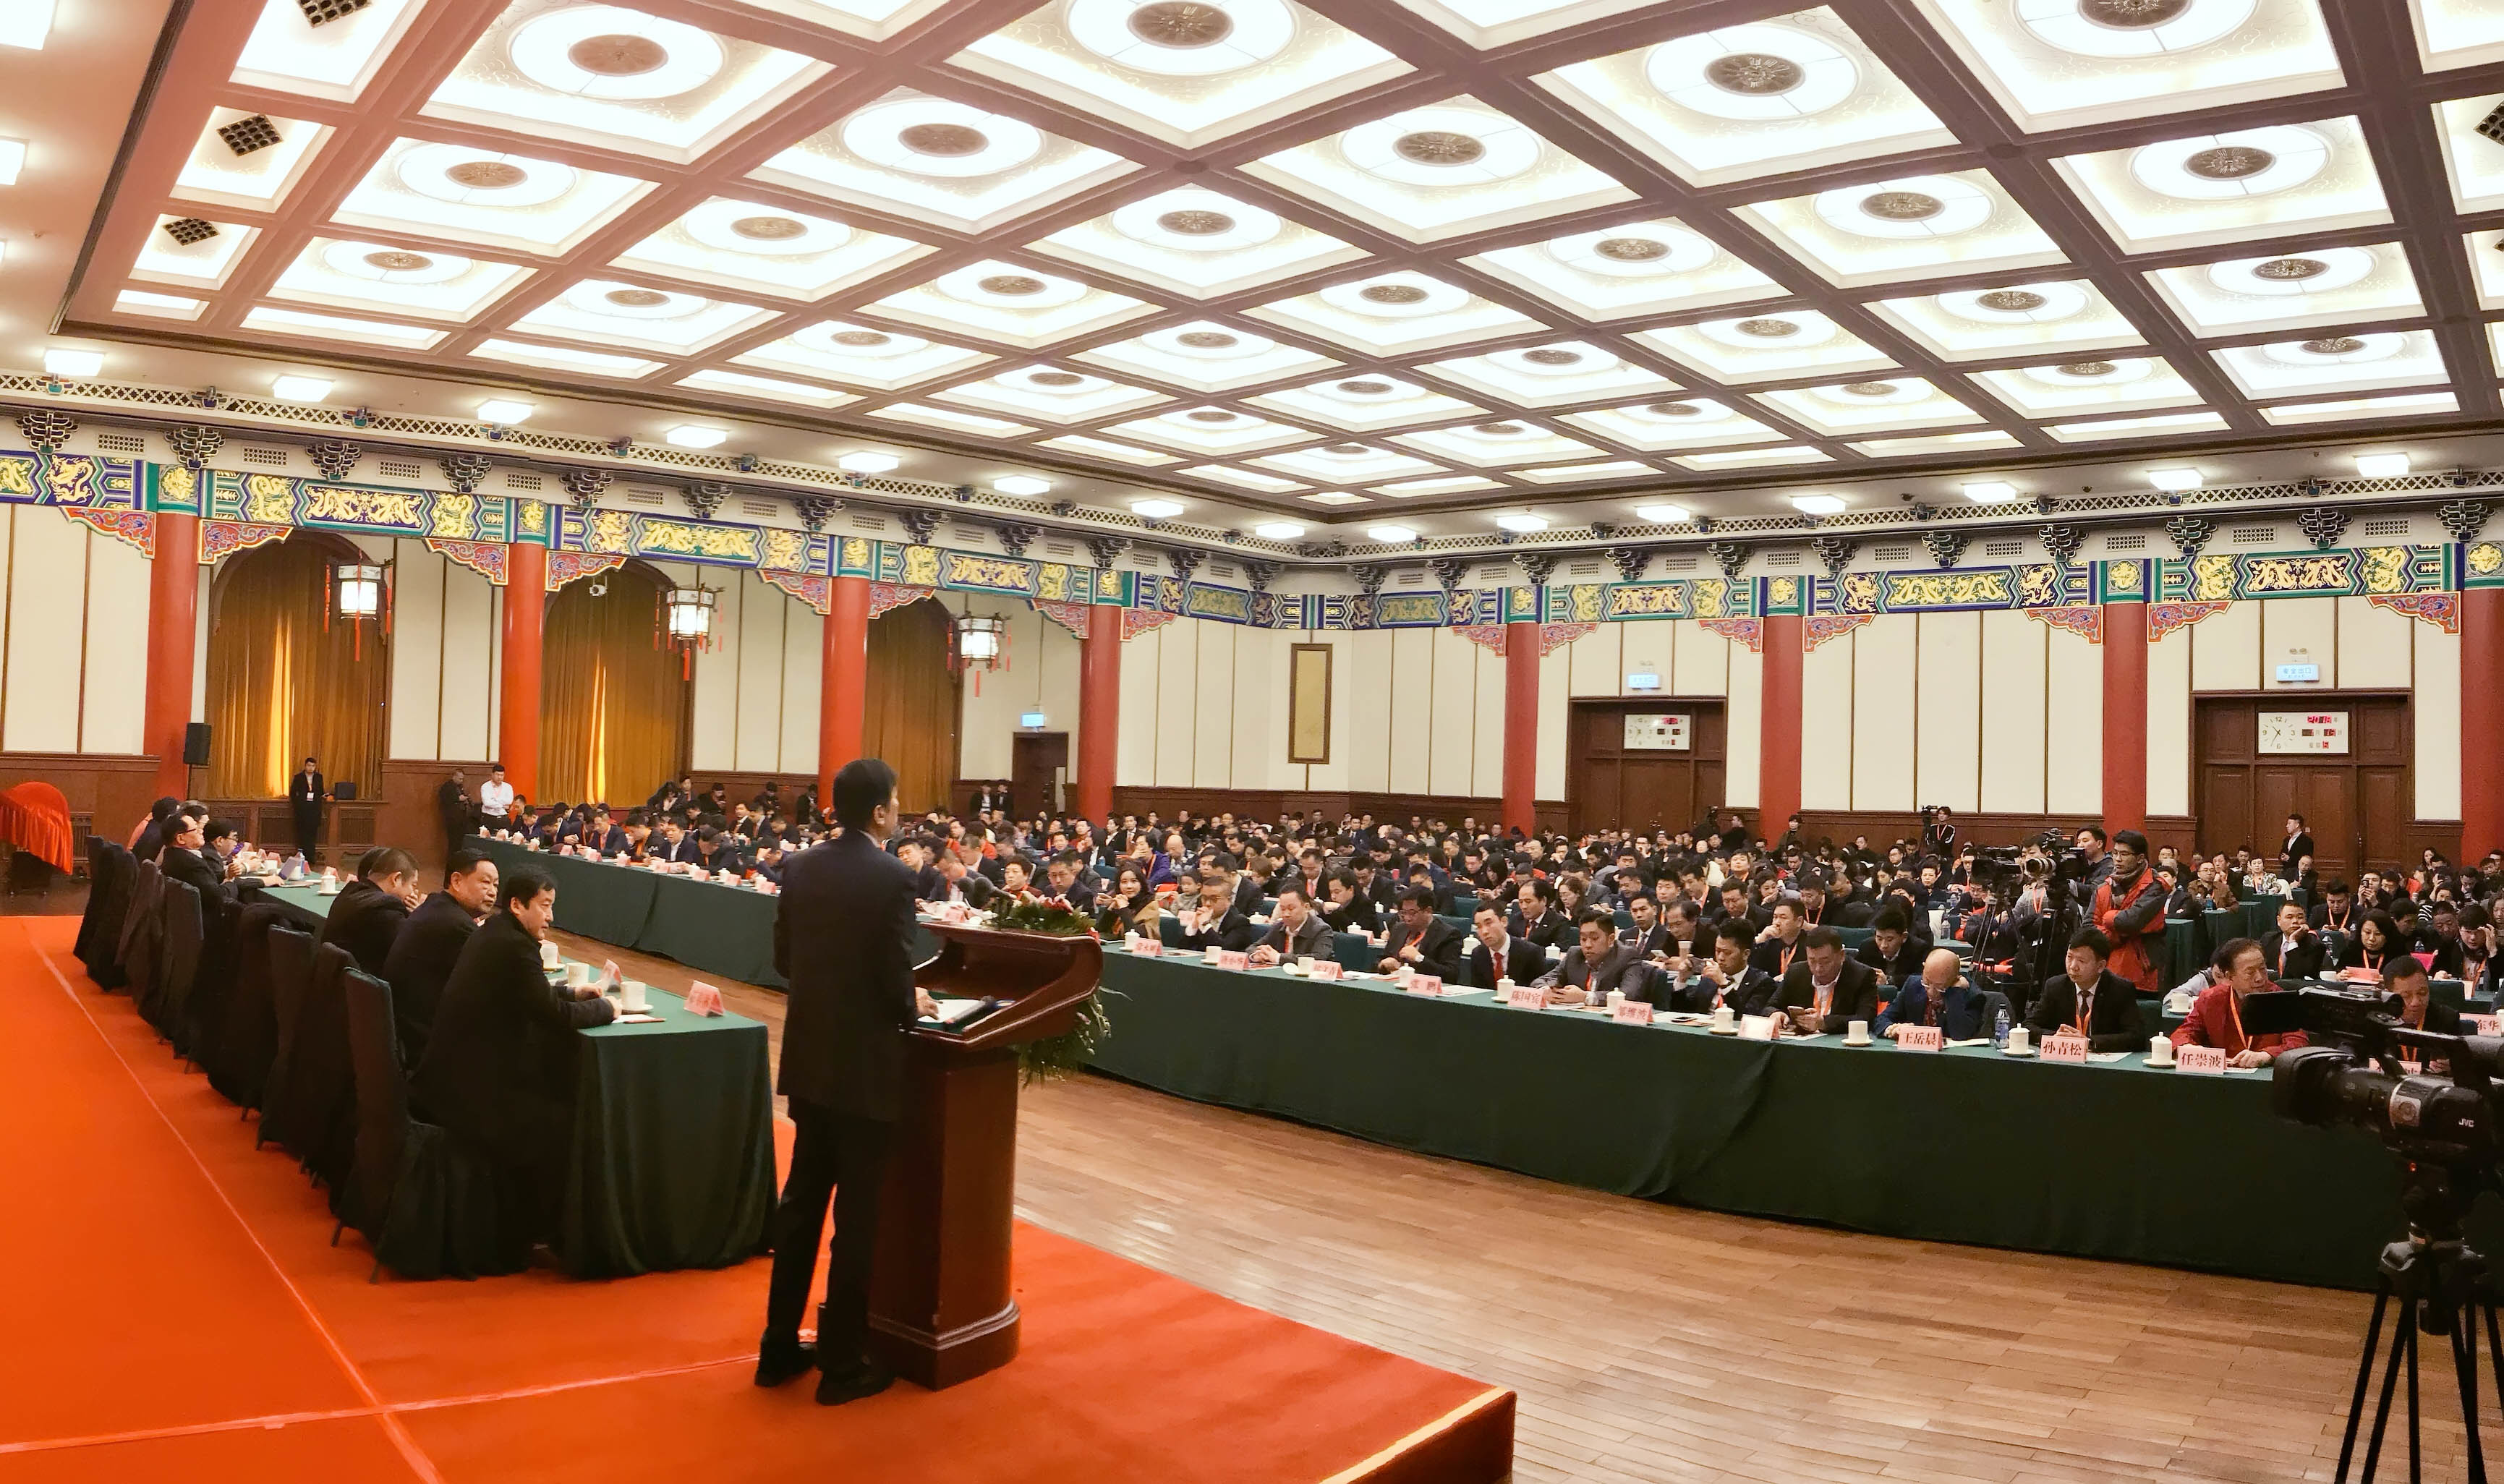 季泉创始人玉芙蓉受邀出席在政协礼堂举办的峰会